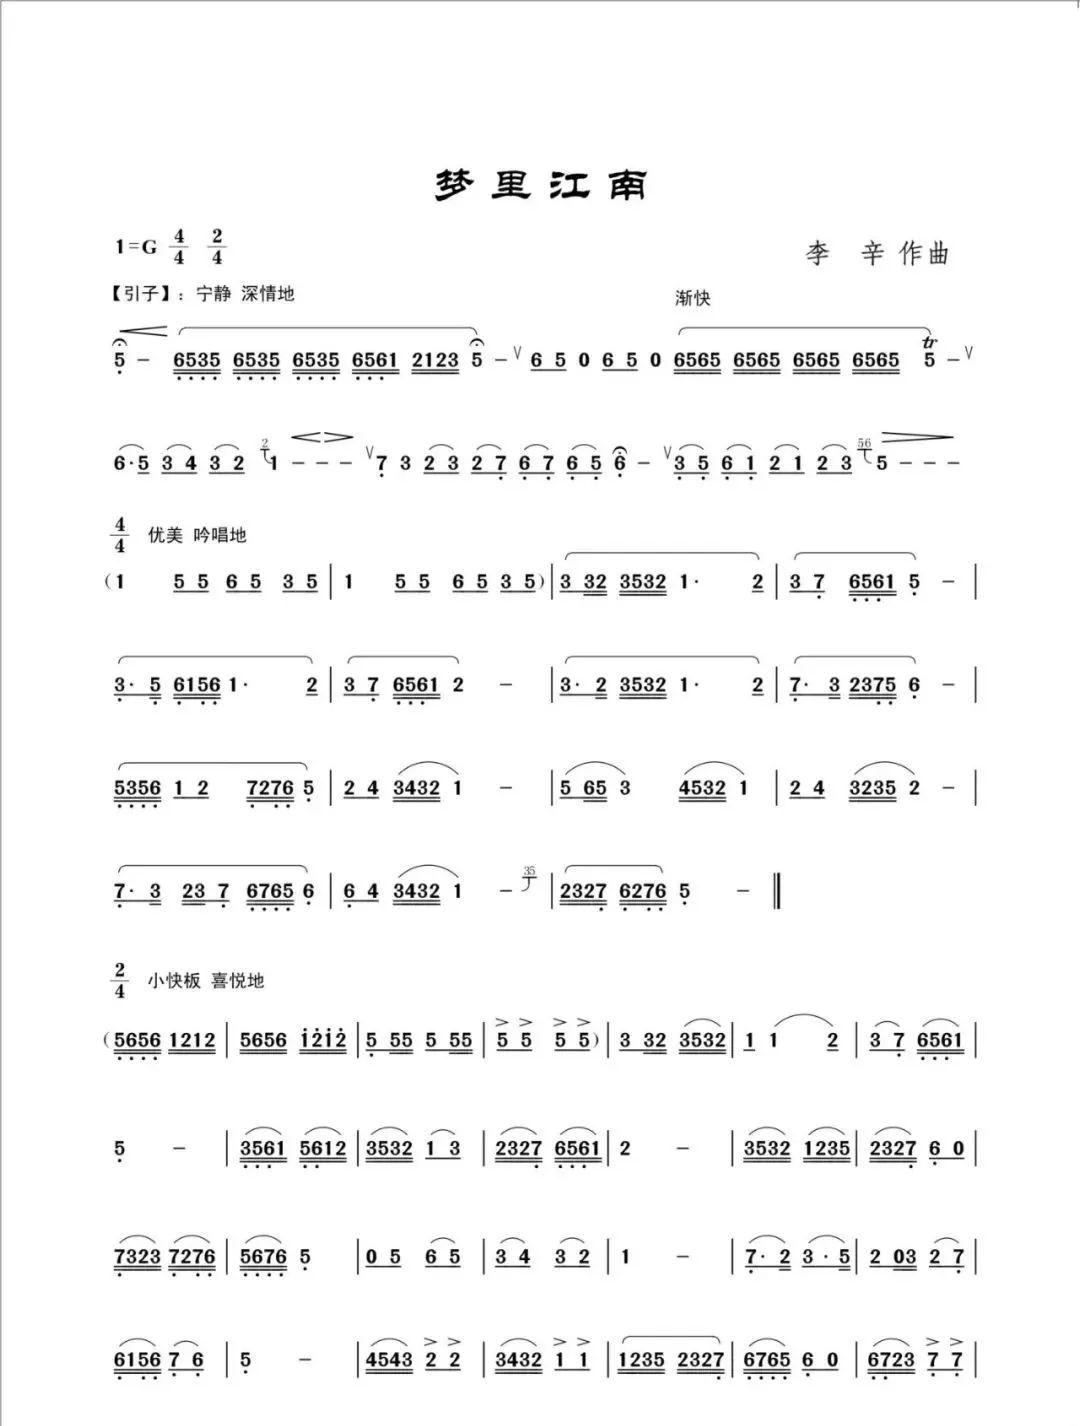 曲谱此曲是葫芦丝江南乐曲的代表作,被列入为中国民族管弦乐学会所